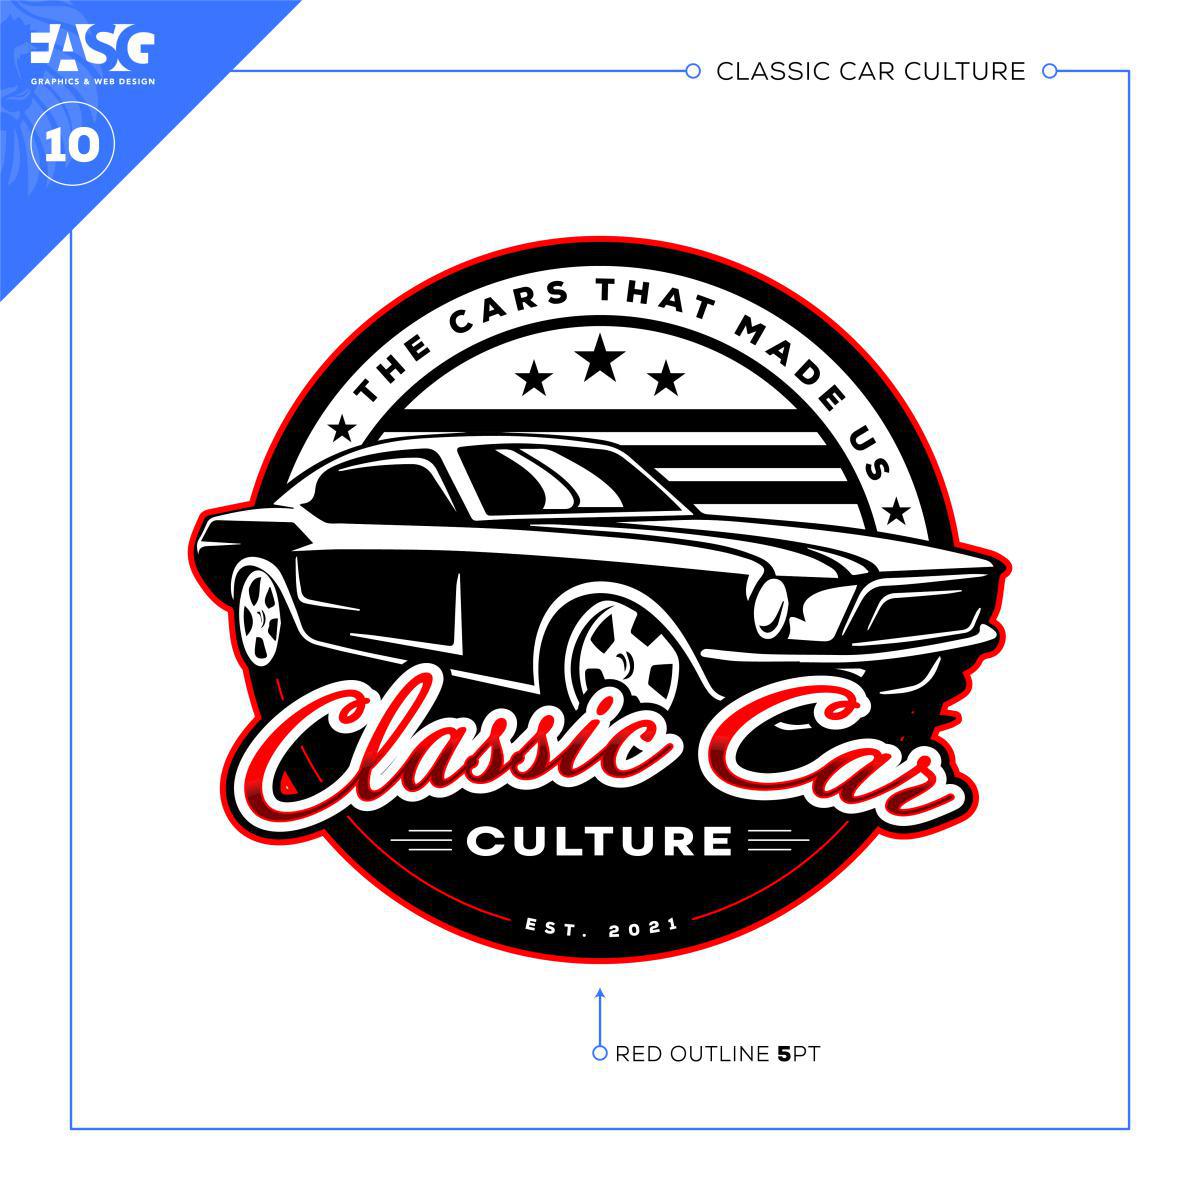 CLASSIC CAR CULTURE